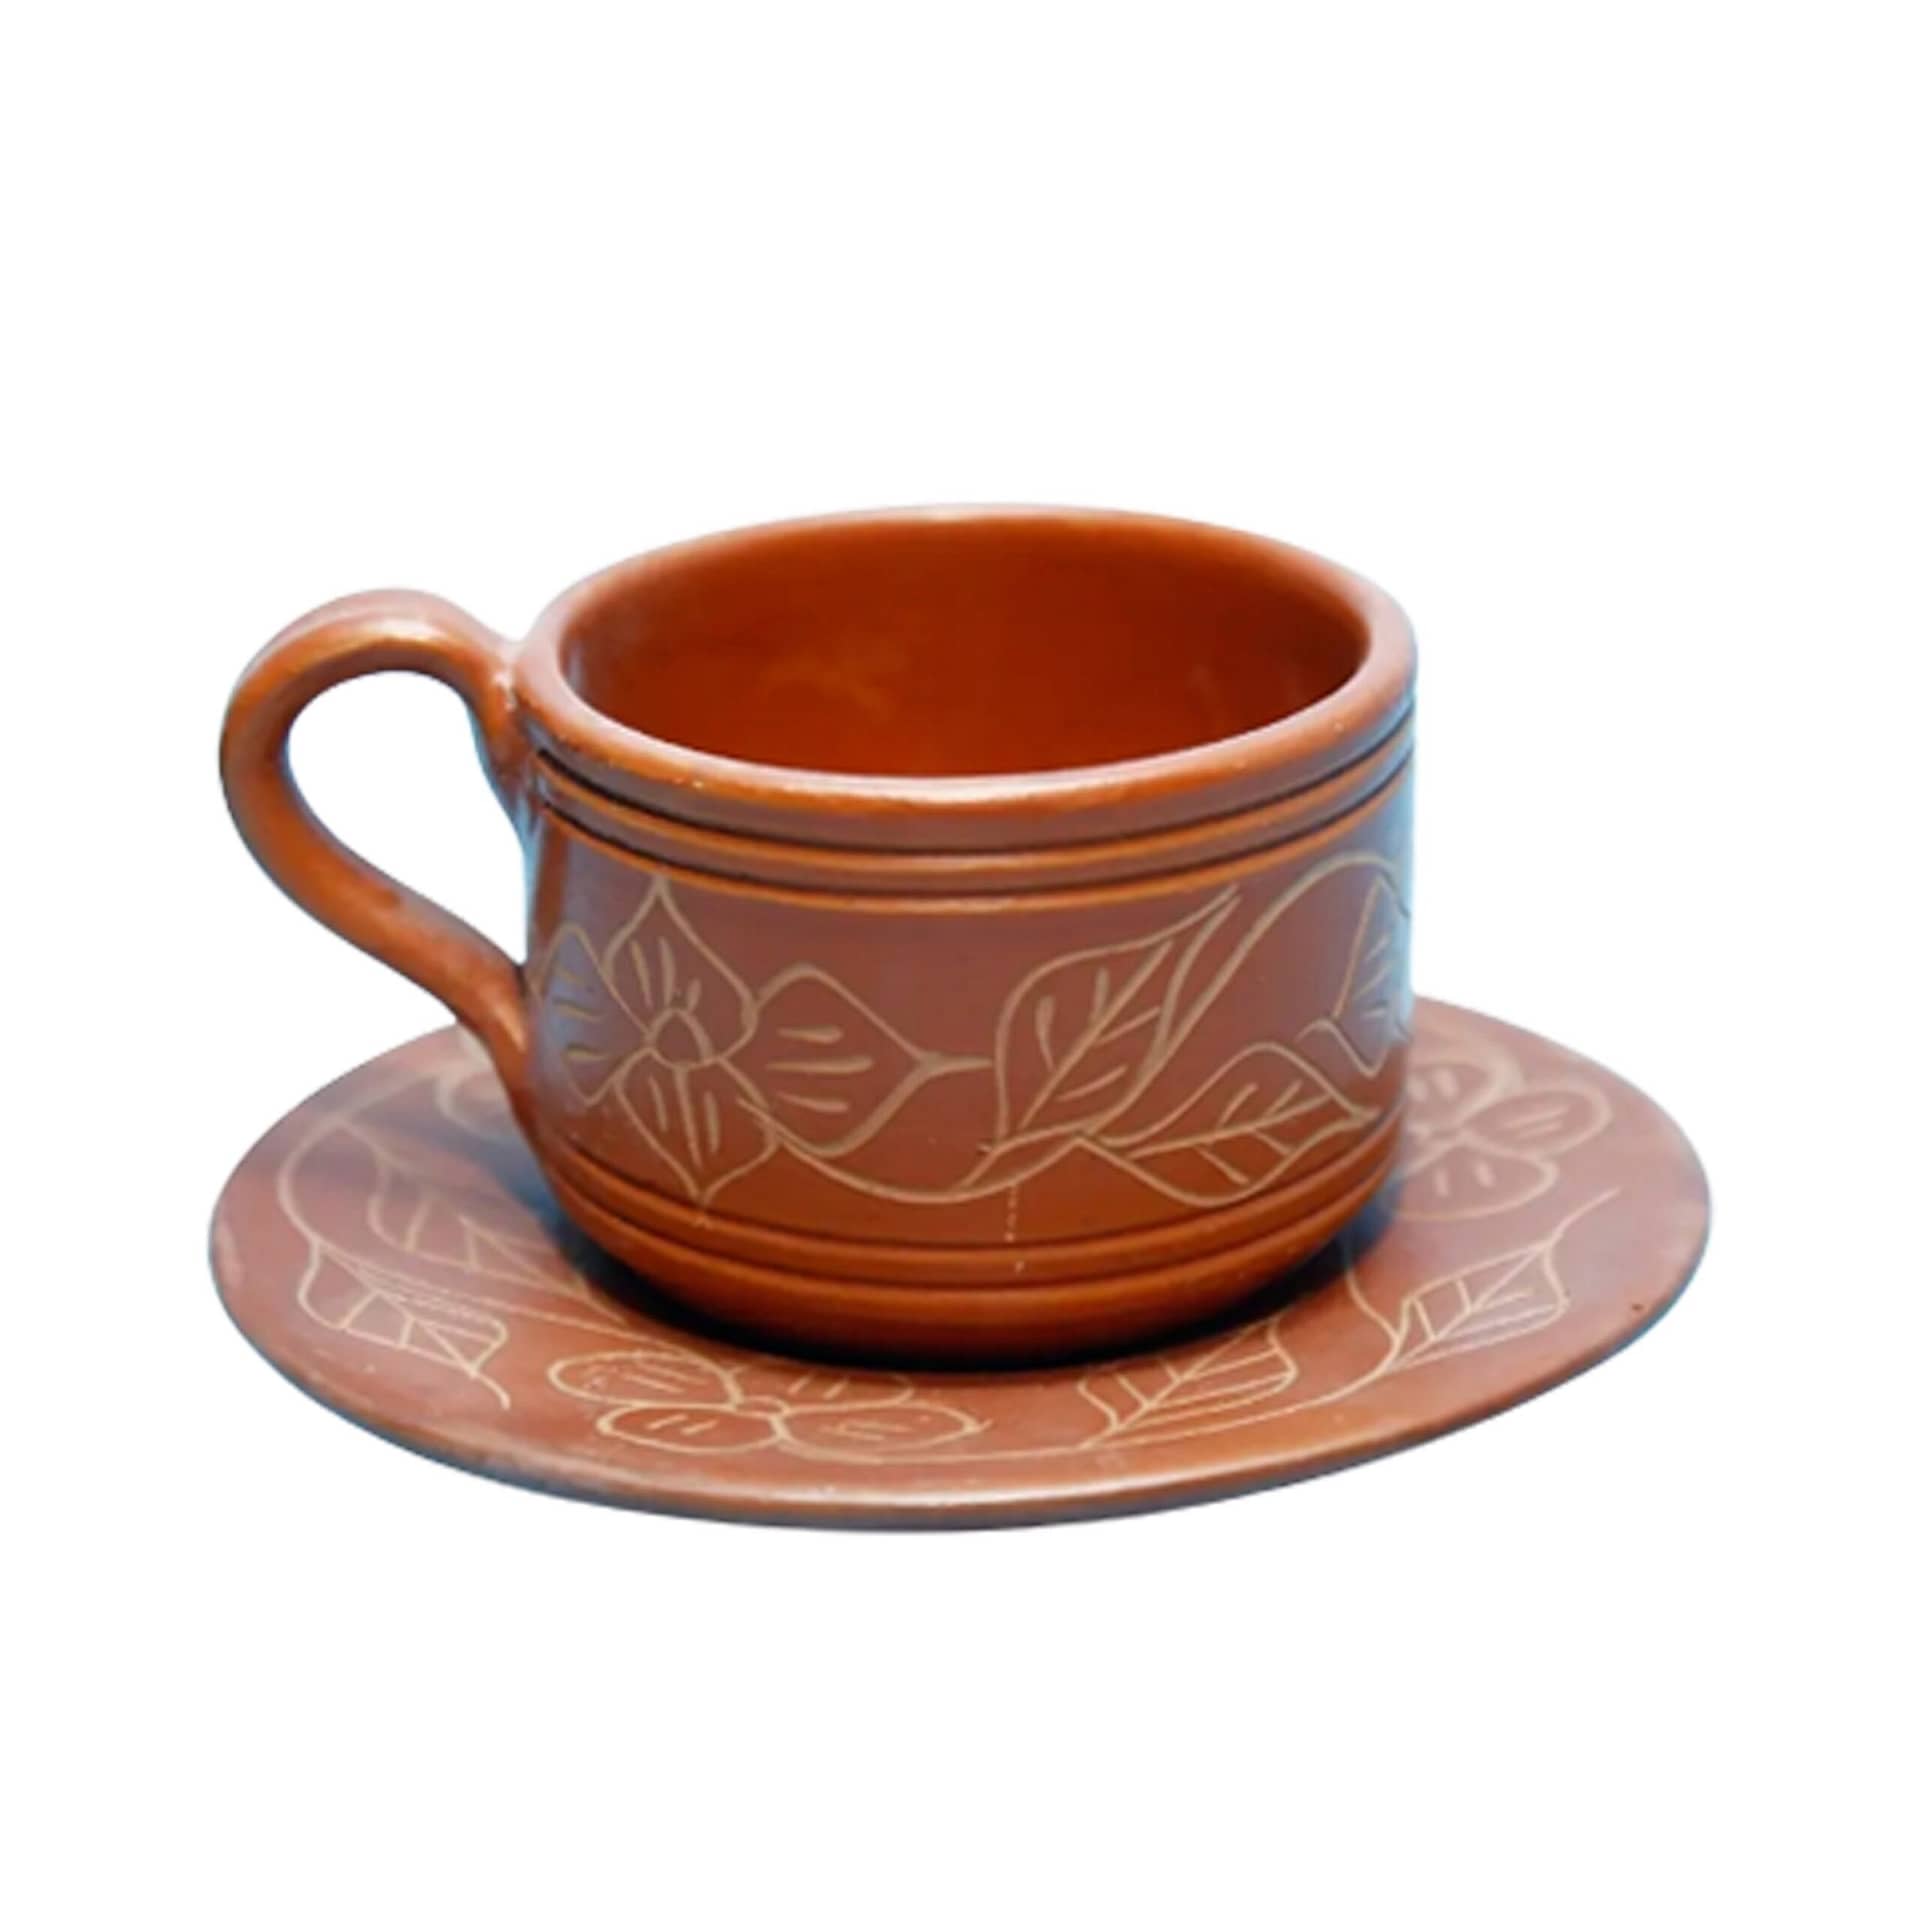 Tiny Cup, Handmade Pottery